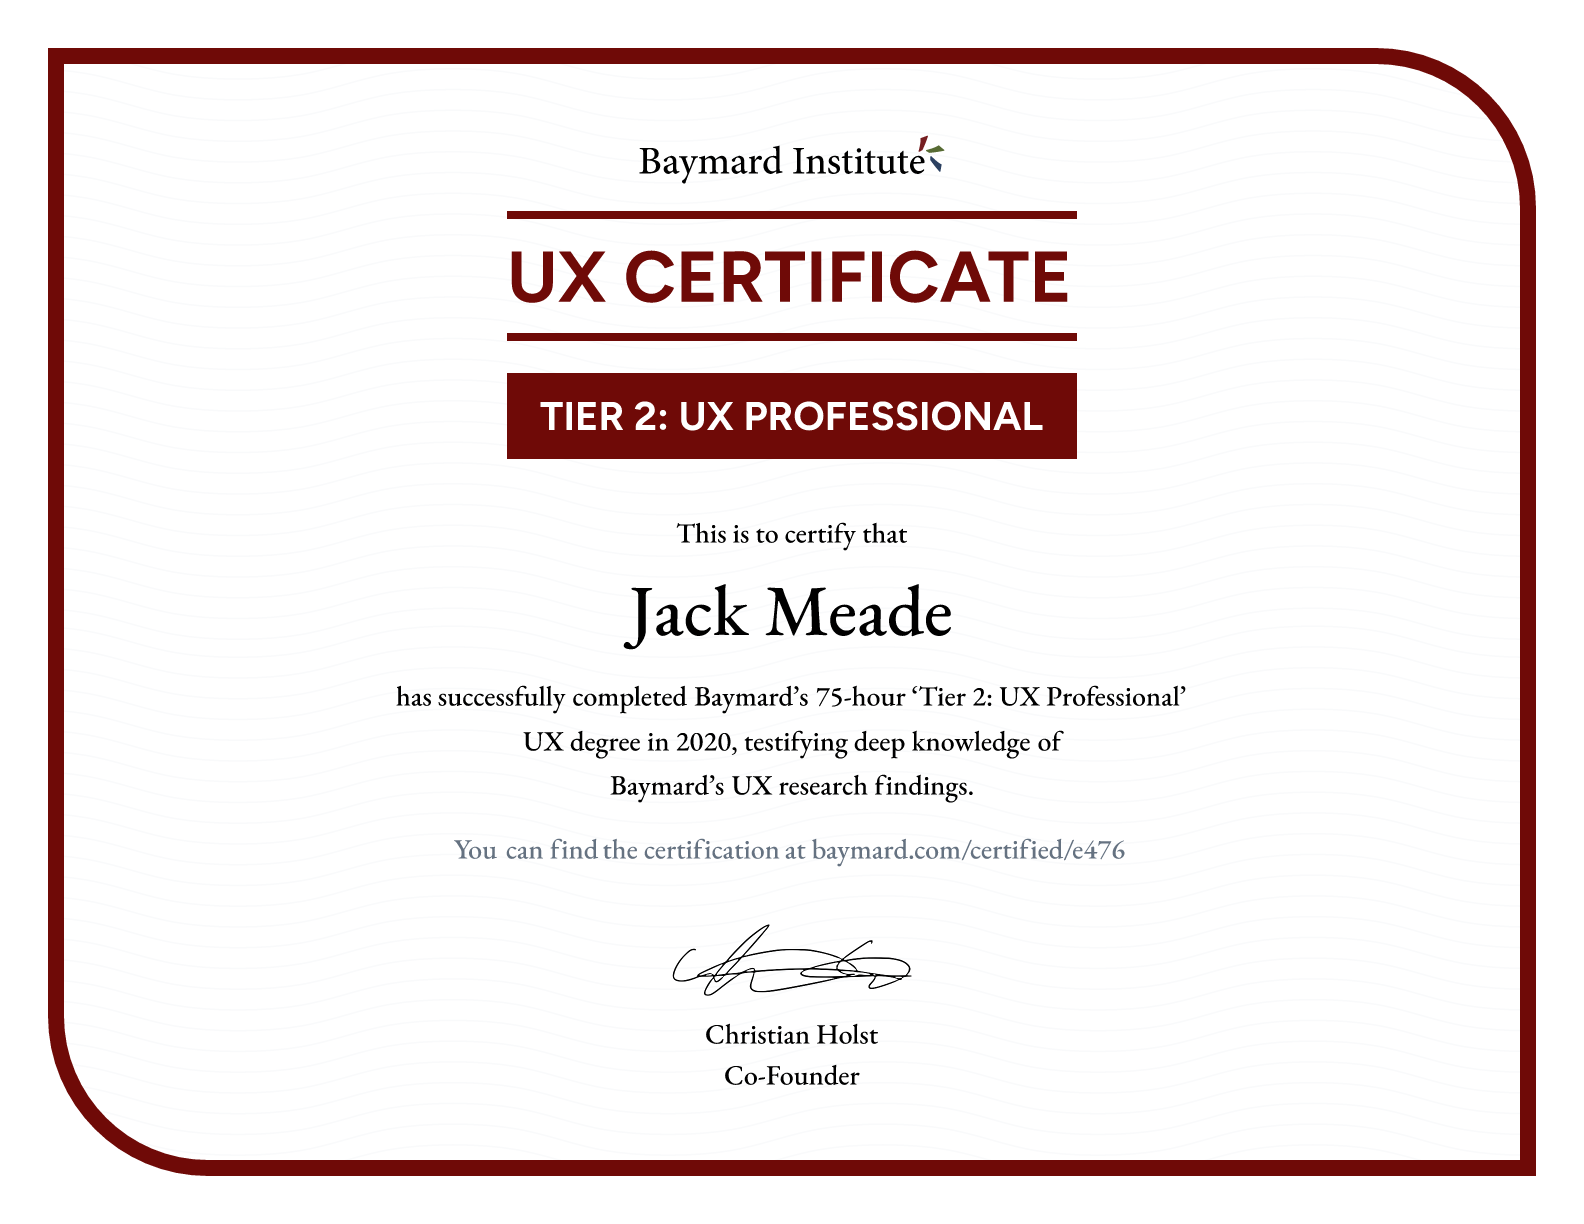 Jack Meade’s certificate